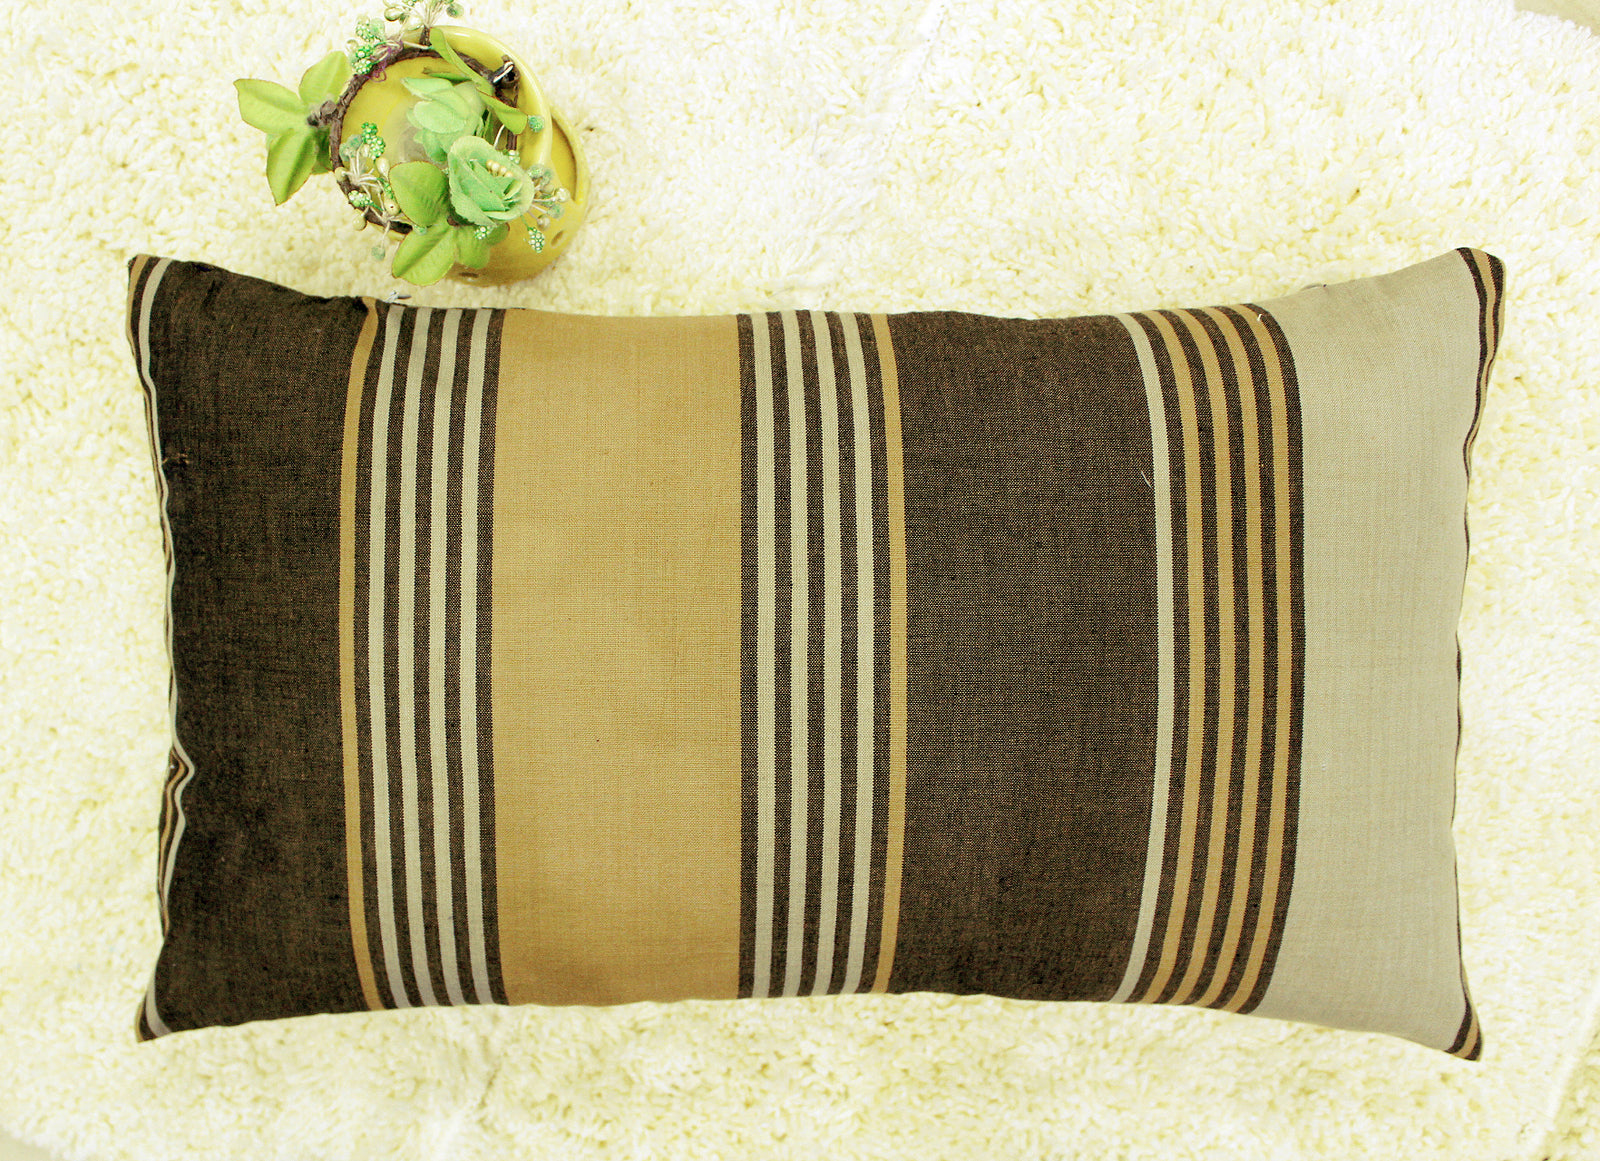 Woven Stripe Cotton 2 Pcs Cushion Cover set - Multicolor